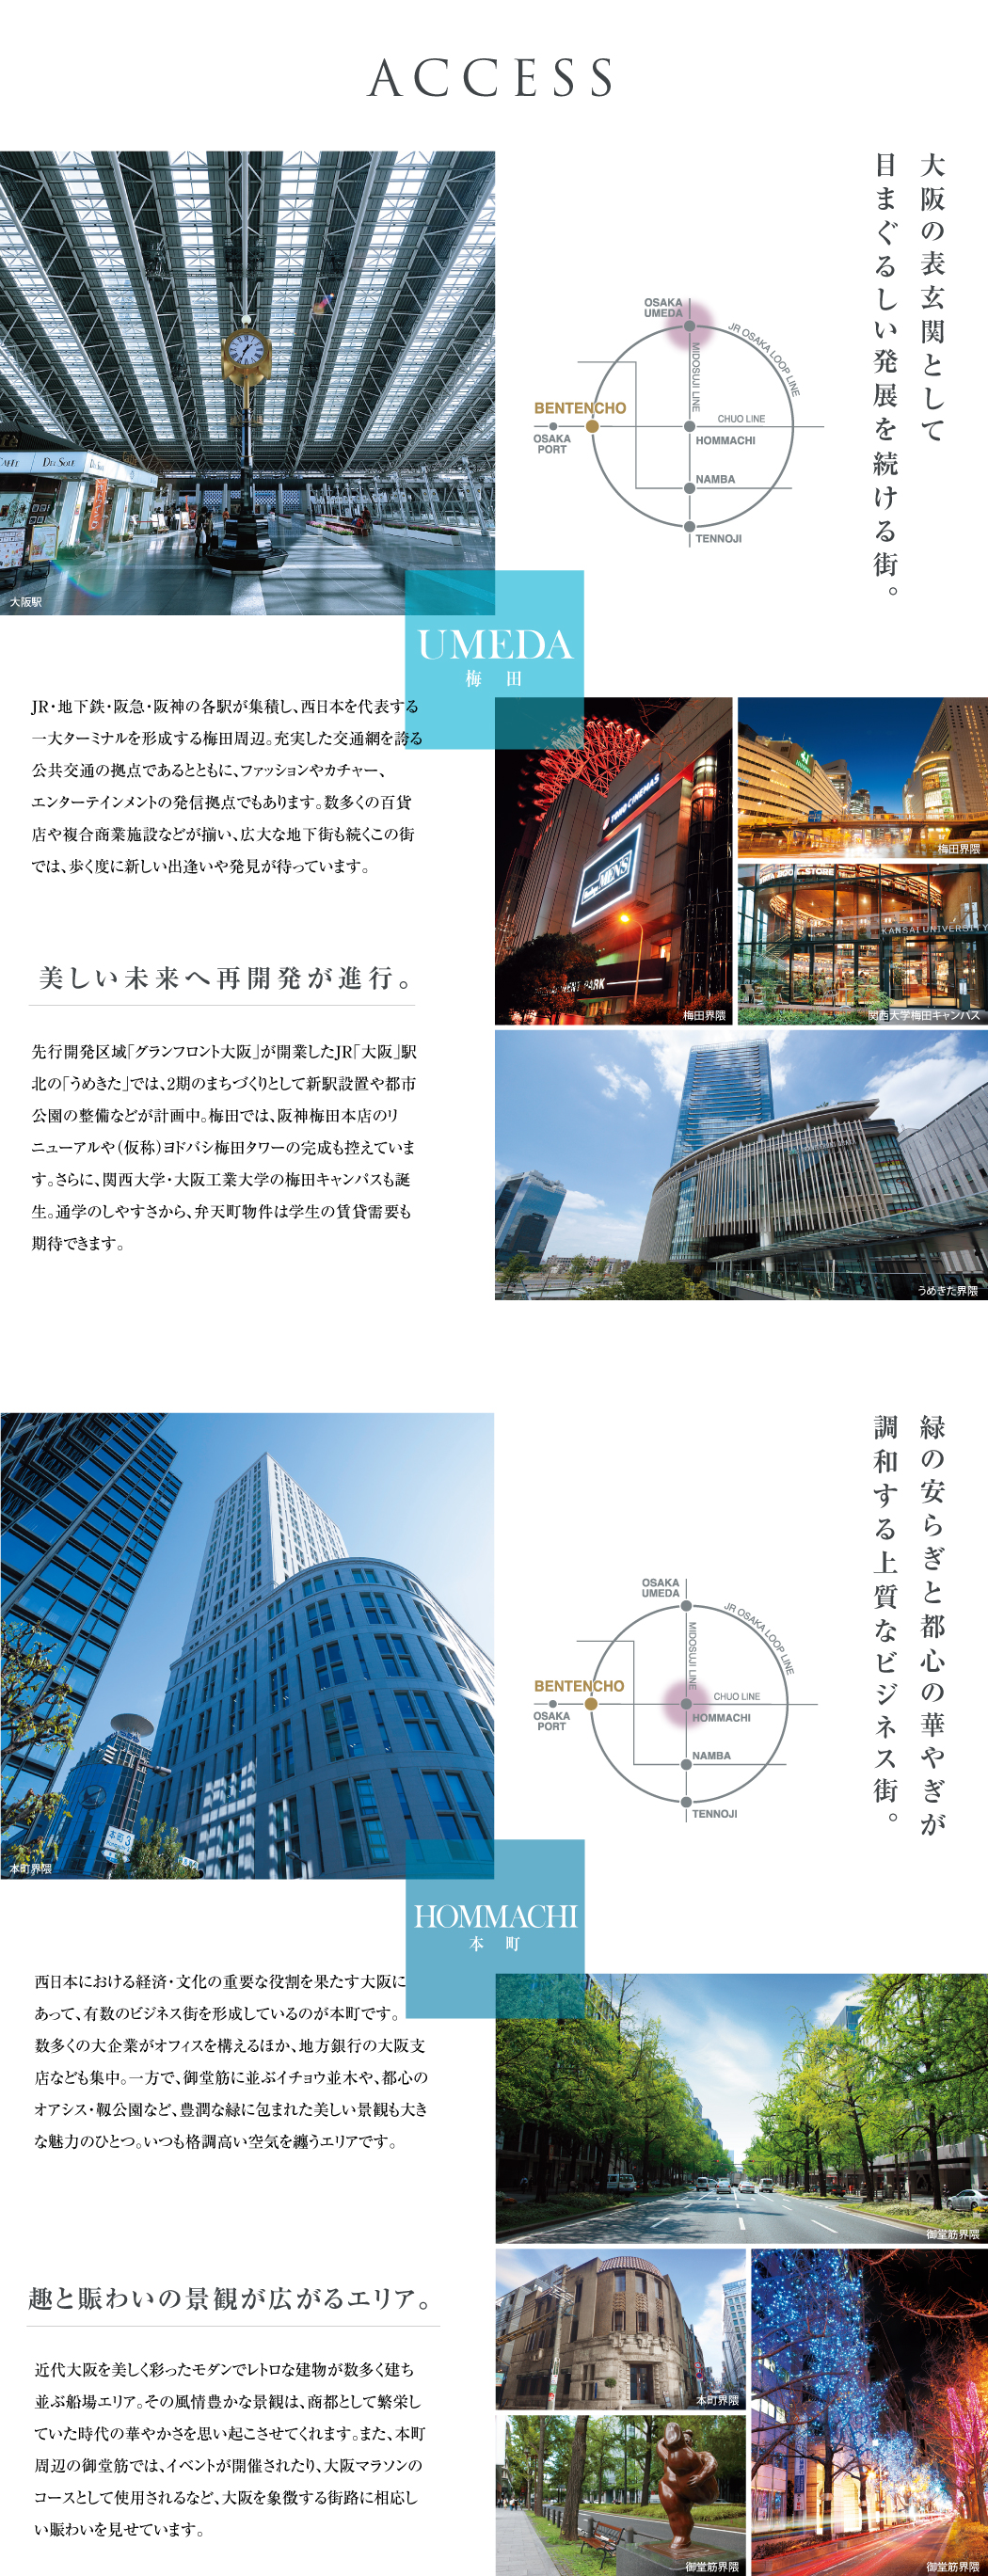 access,大阪の表玄関として目まぐるしい発展を続ける街。緑の安らぎと都心の華やぎが調和する上質なビジネス街